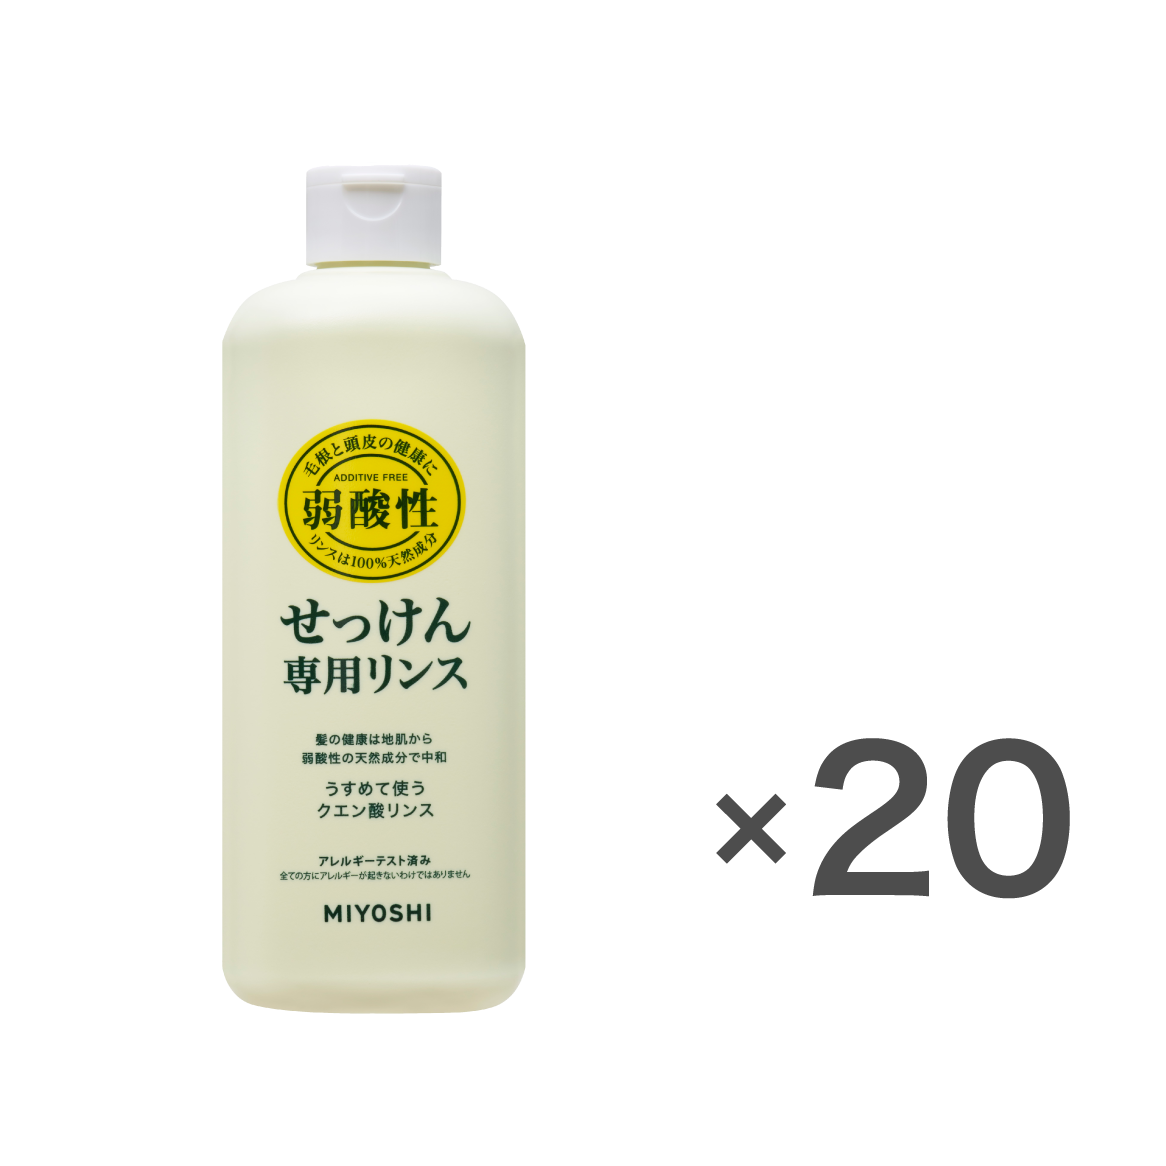 無添加せっけん専用リンス 本体ケース(350ml×20個入) – MIYOSHI SOAP CORPORATION